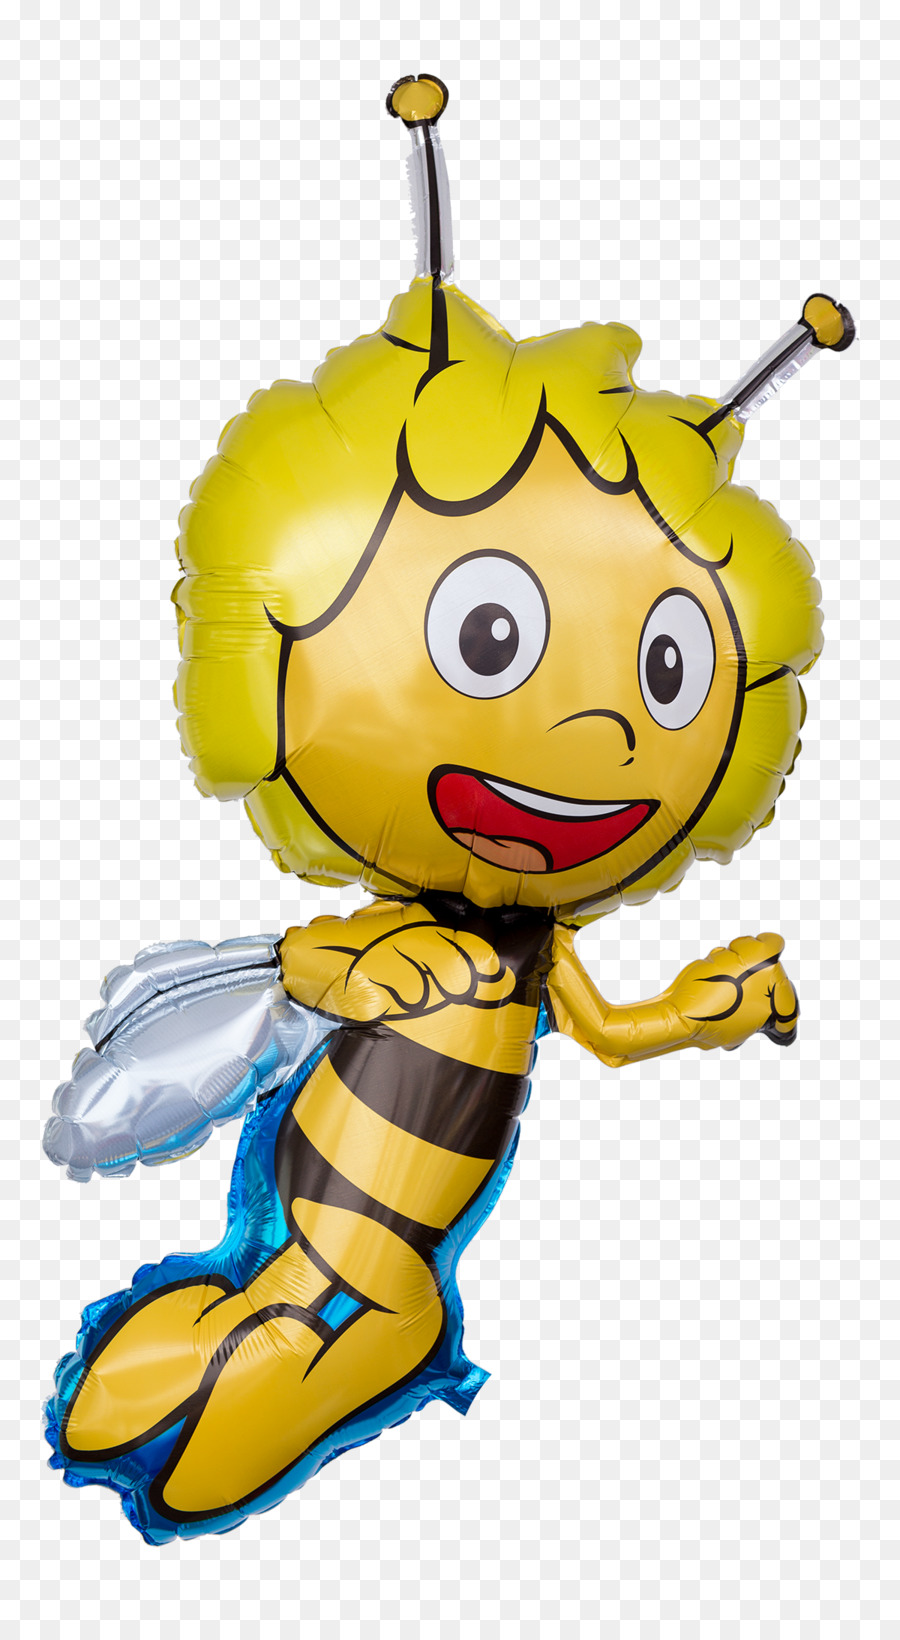 Honey bee Maya the Bee Toy balloon - bee png download - 1200*2161 - Free Transparent Honey Bee png Download.